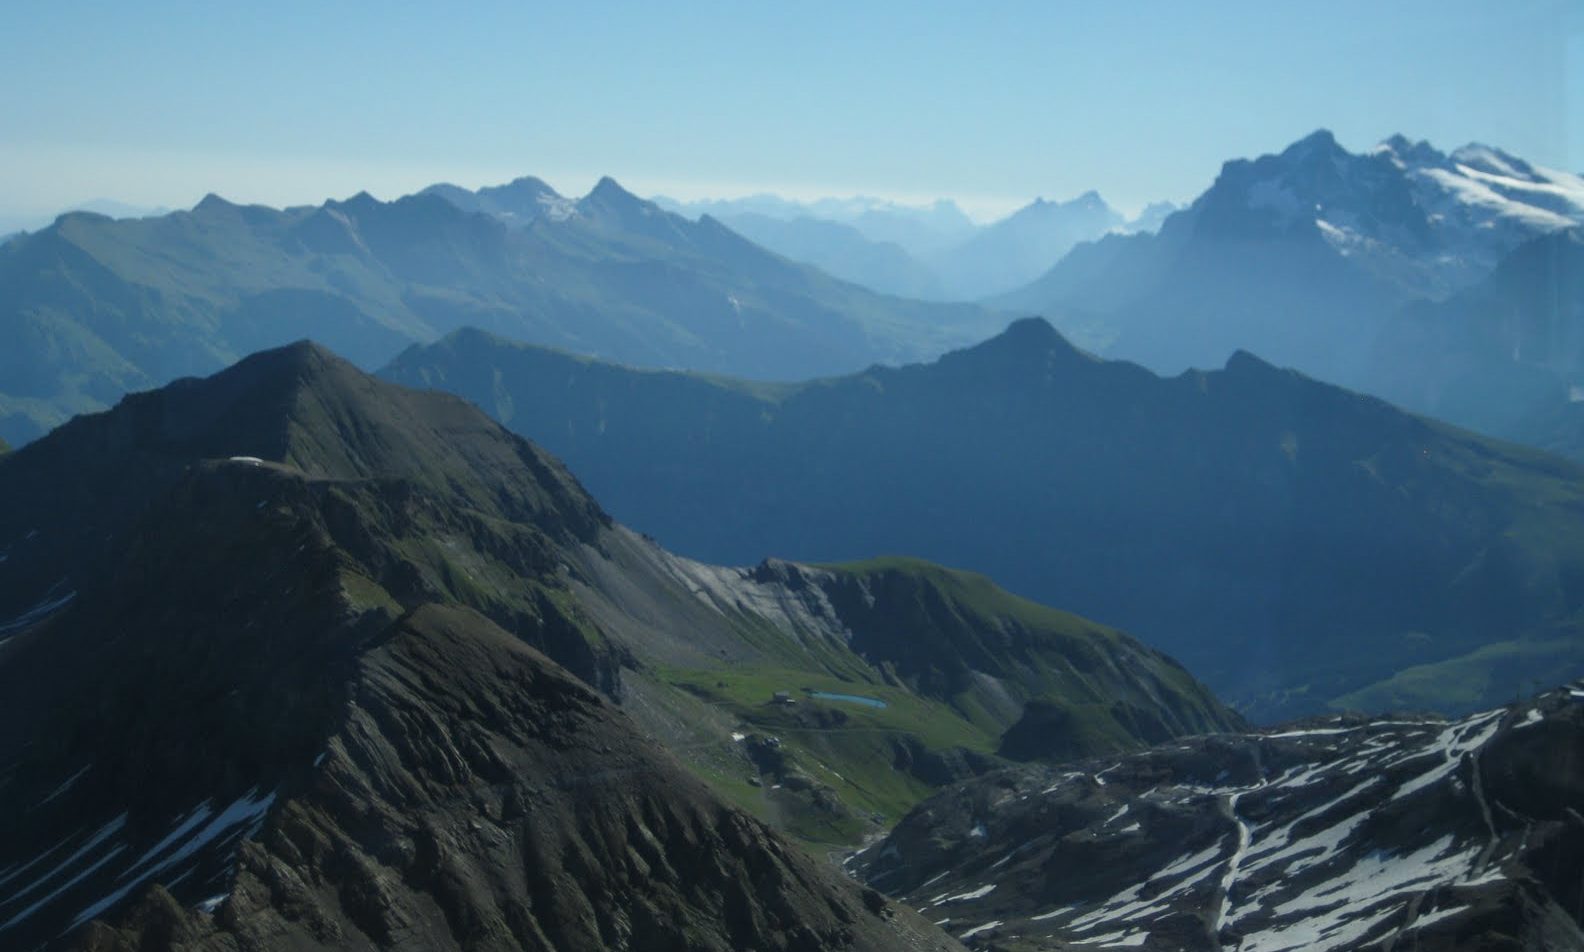 Gimmelwald-Murren, Swiss Alps, summer 2011